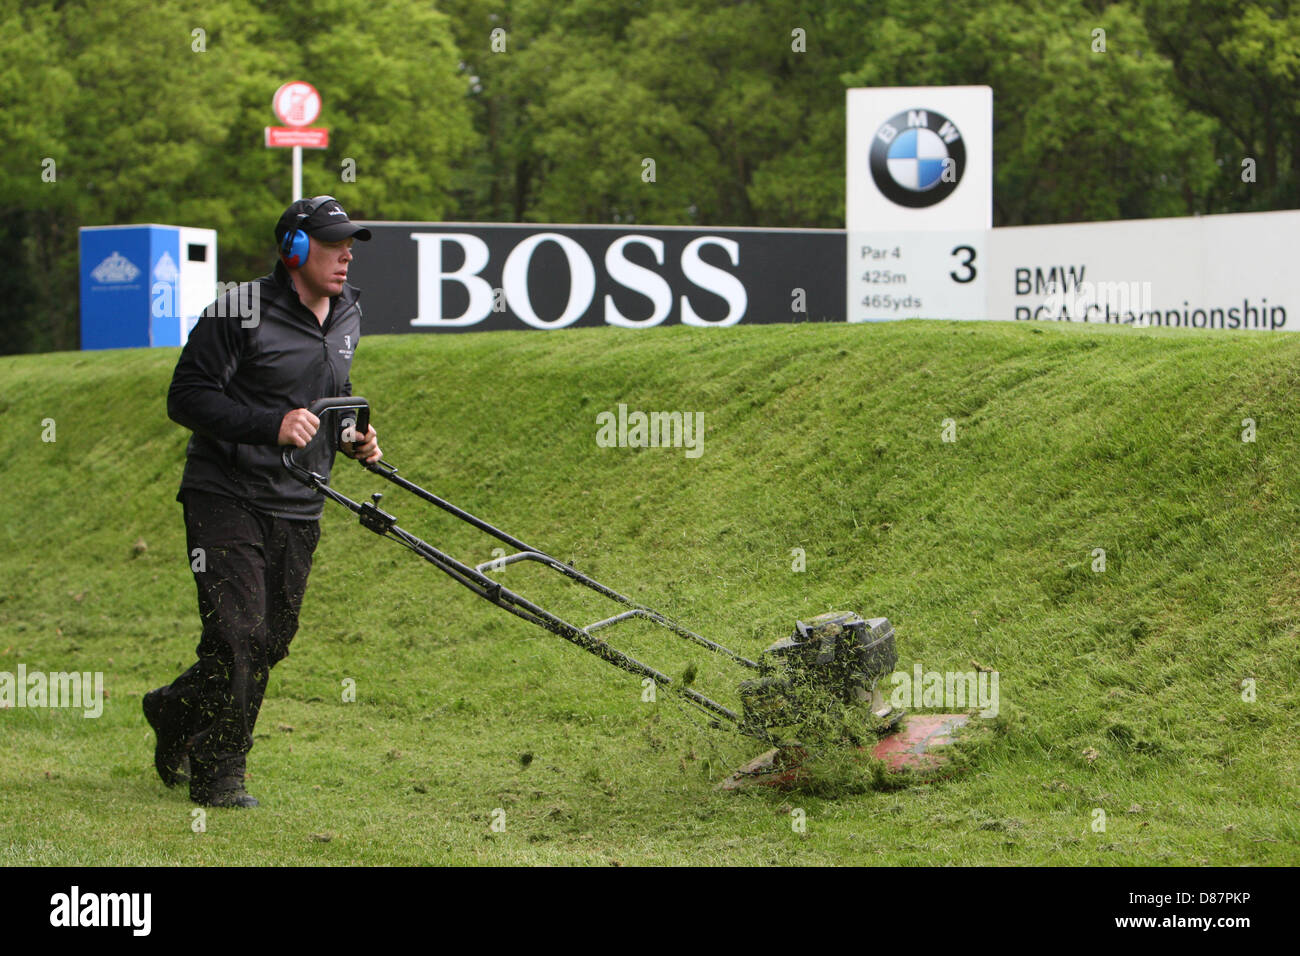 21.05.2013 Wentworth, Inghilterra. Groundman sulla terza Tee durante la pratica davanti alla BMW PGA Championships. Foto Stock